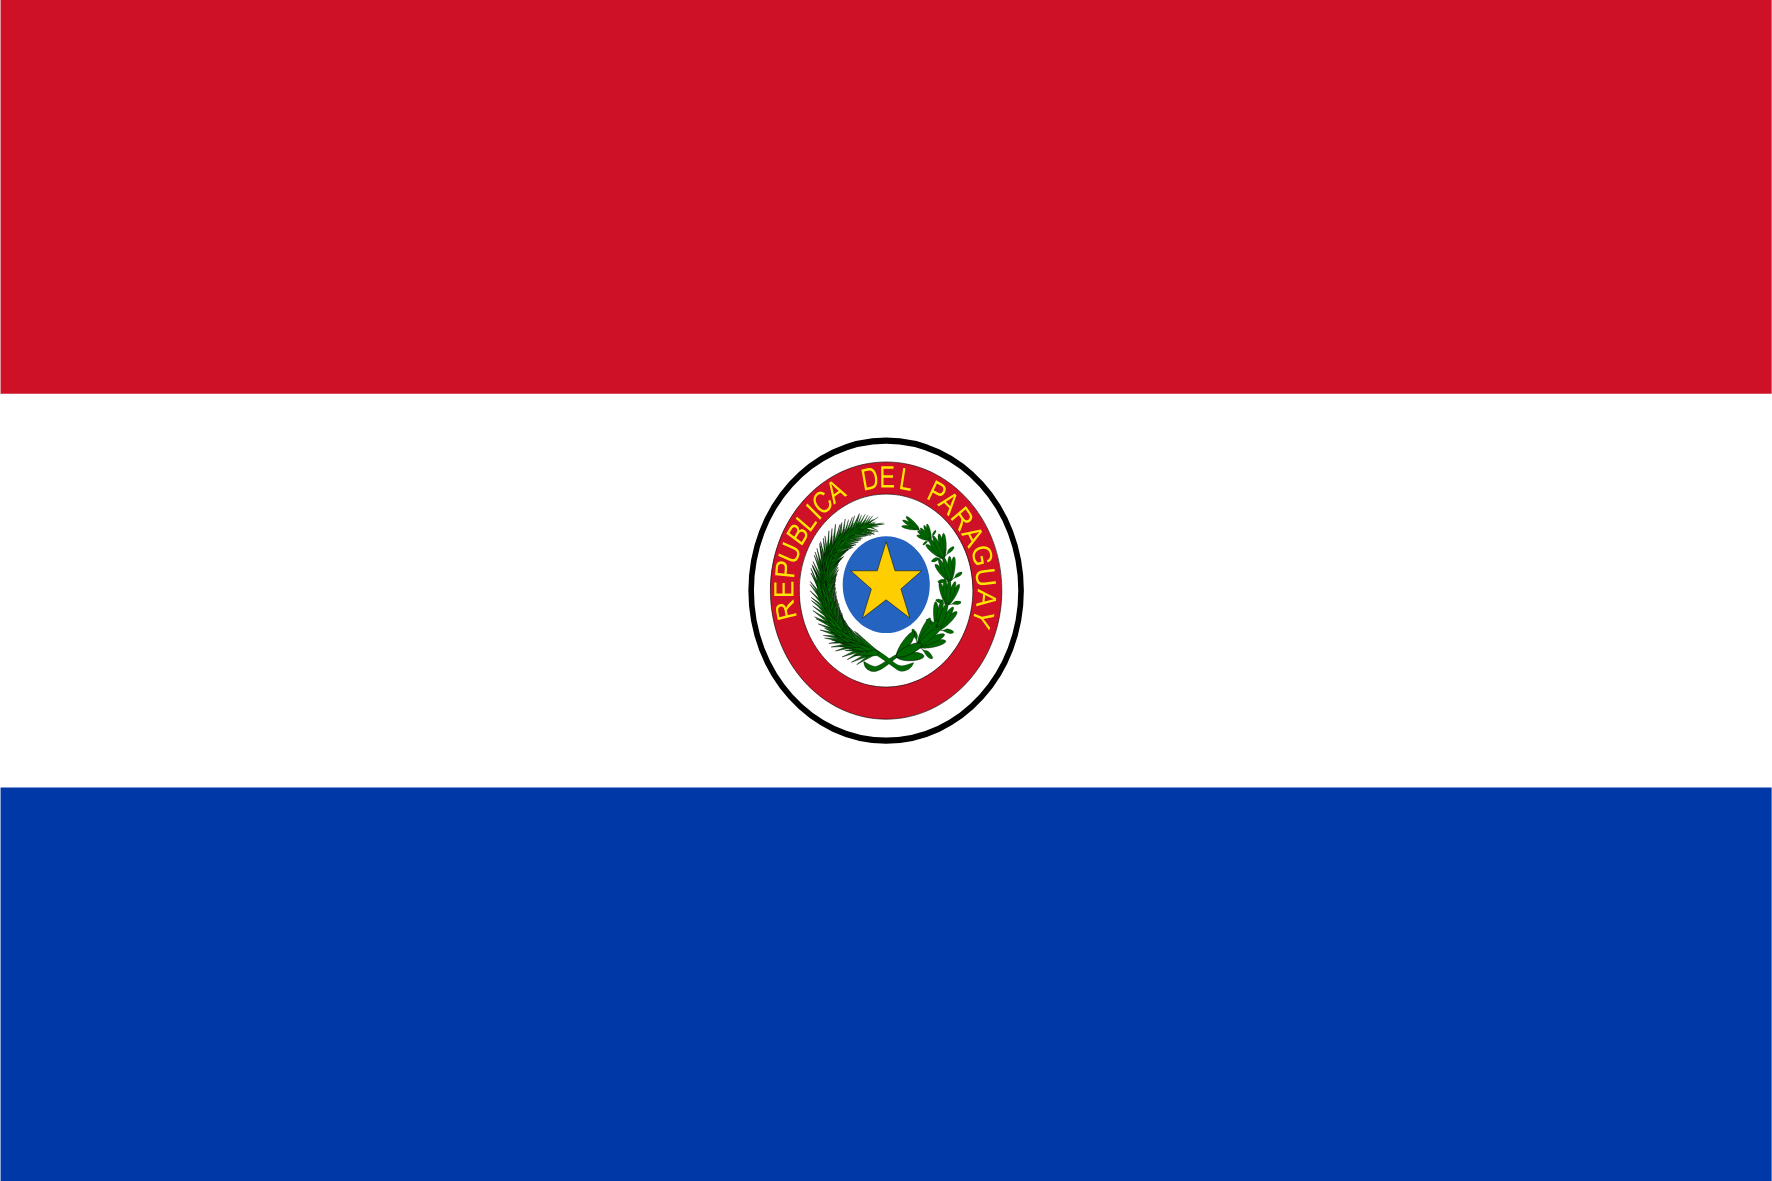 Panel online serta menggunakan seluler di Paraguay